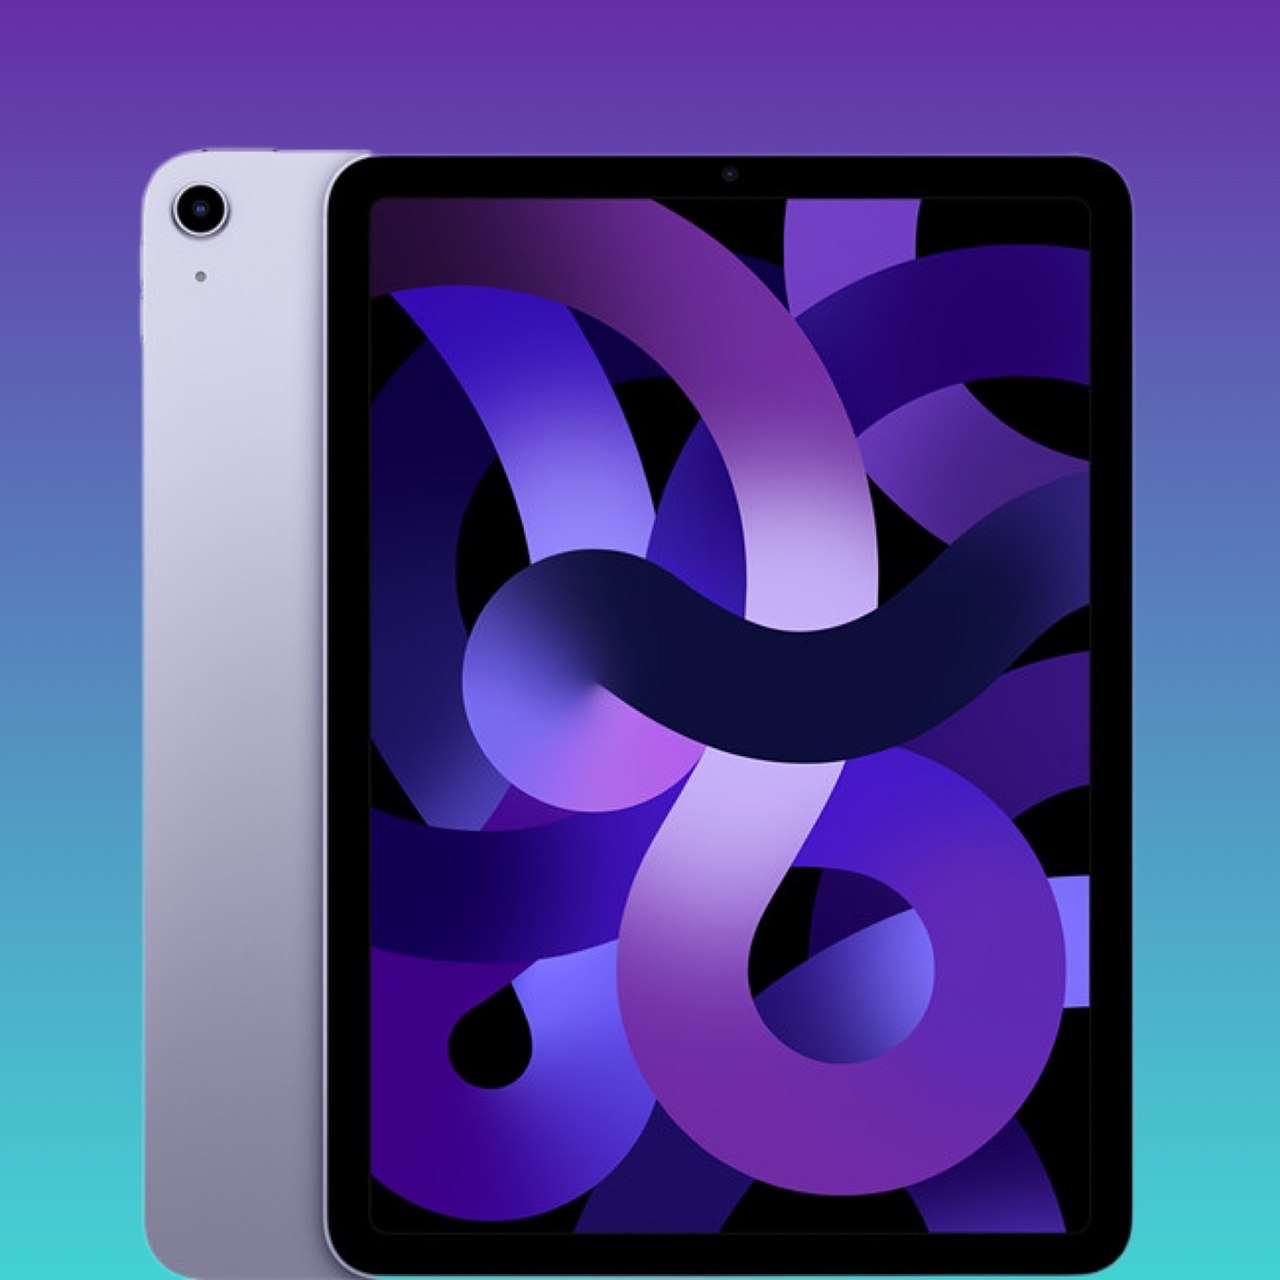 iPad Air 5 có màu gì? Tham khảo và đặt hàng sớm tại TopZone ngay!